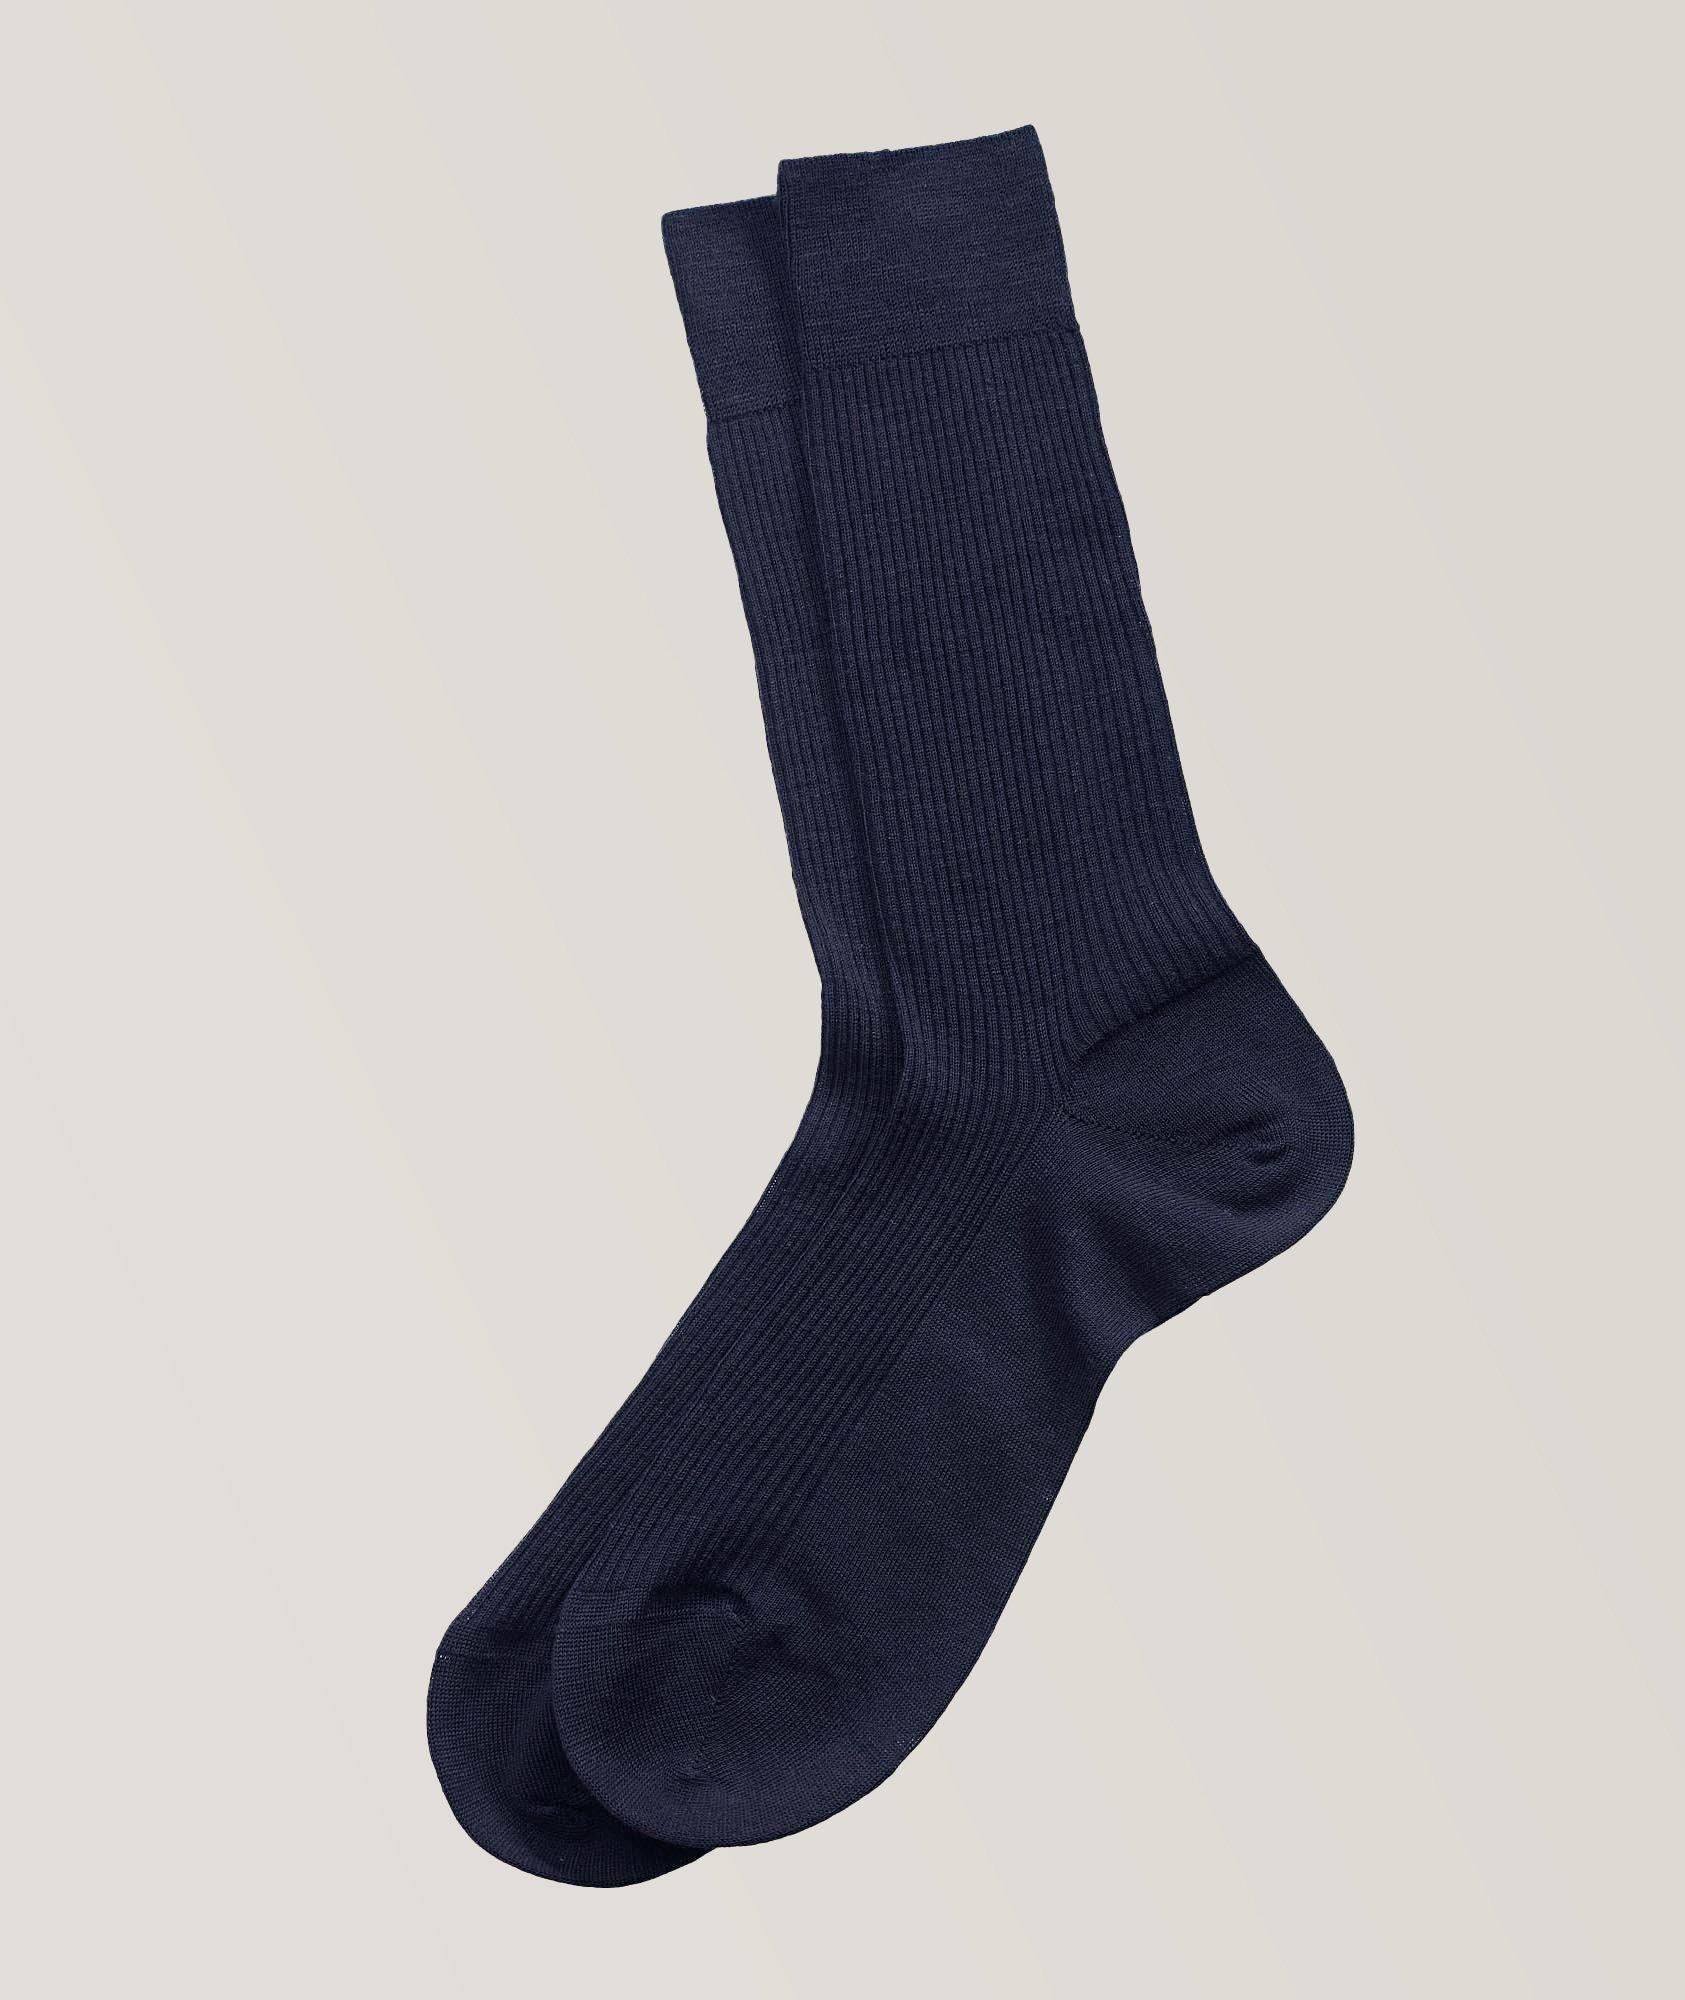 Merino Blend Socks image 0